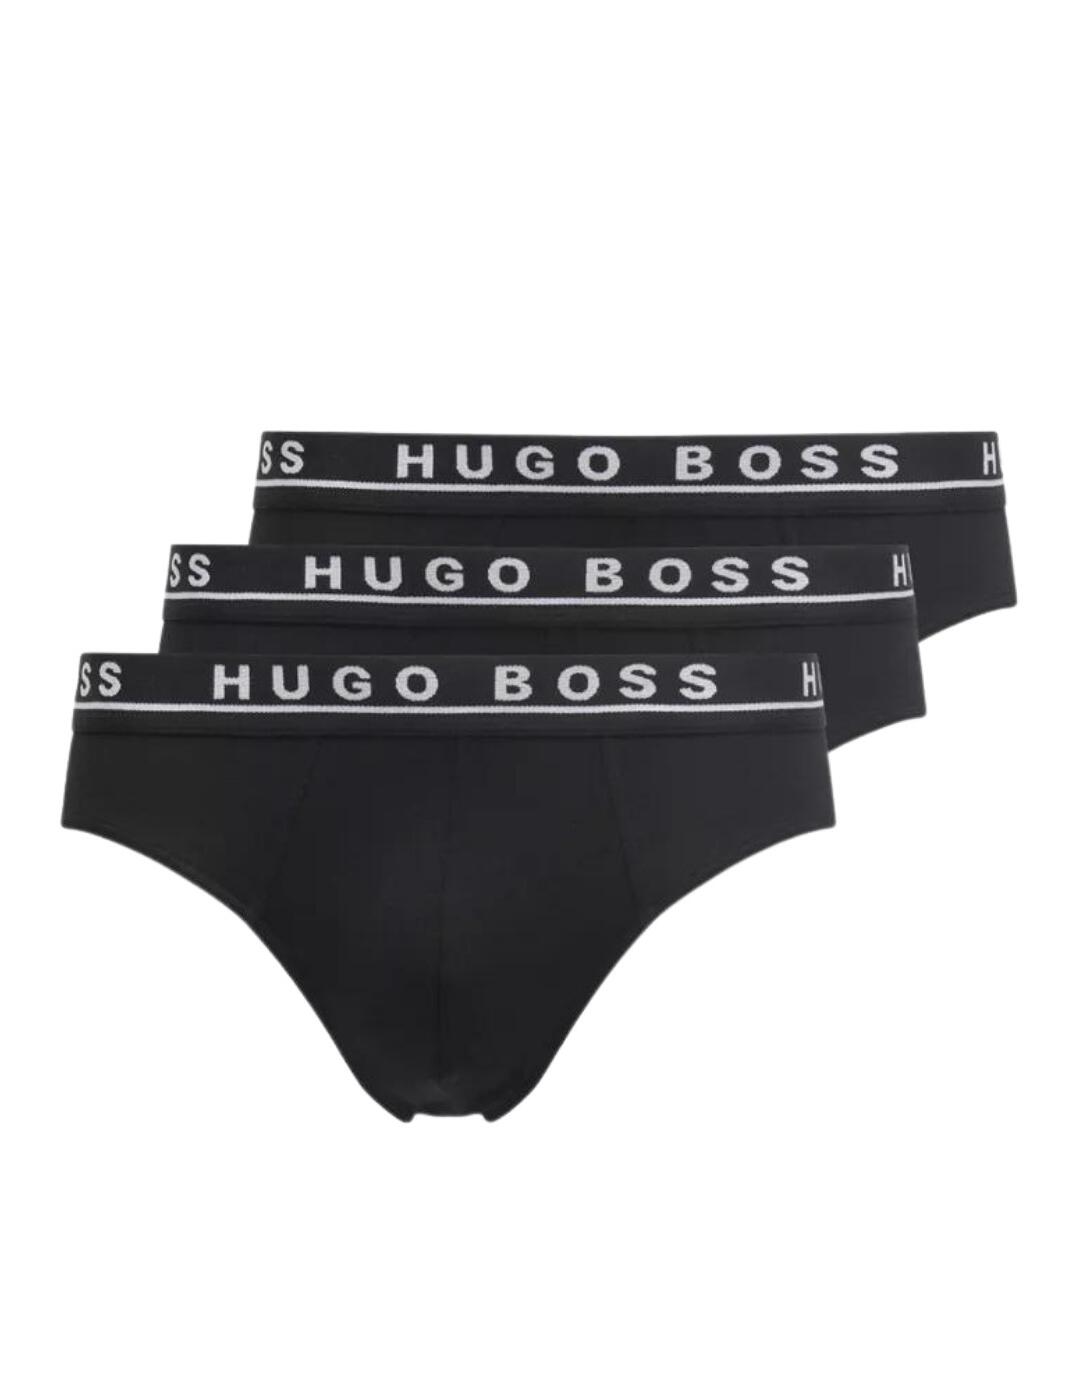 Hugo Boss Brief 3 Pack - Belle Lingerie